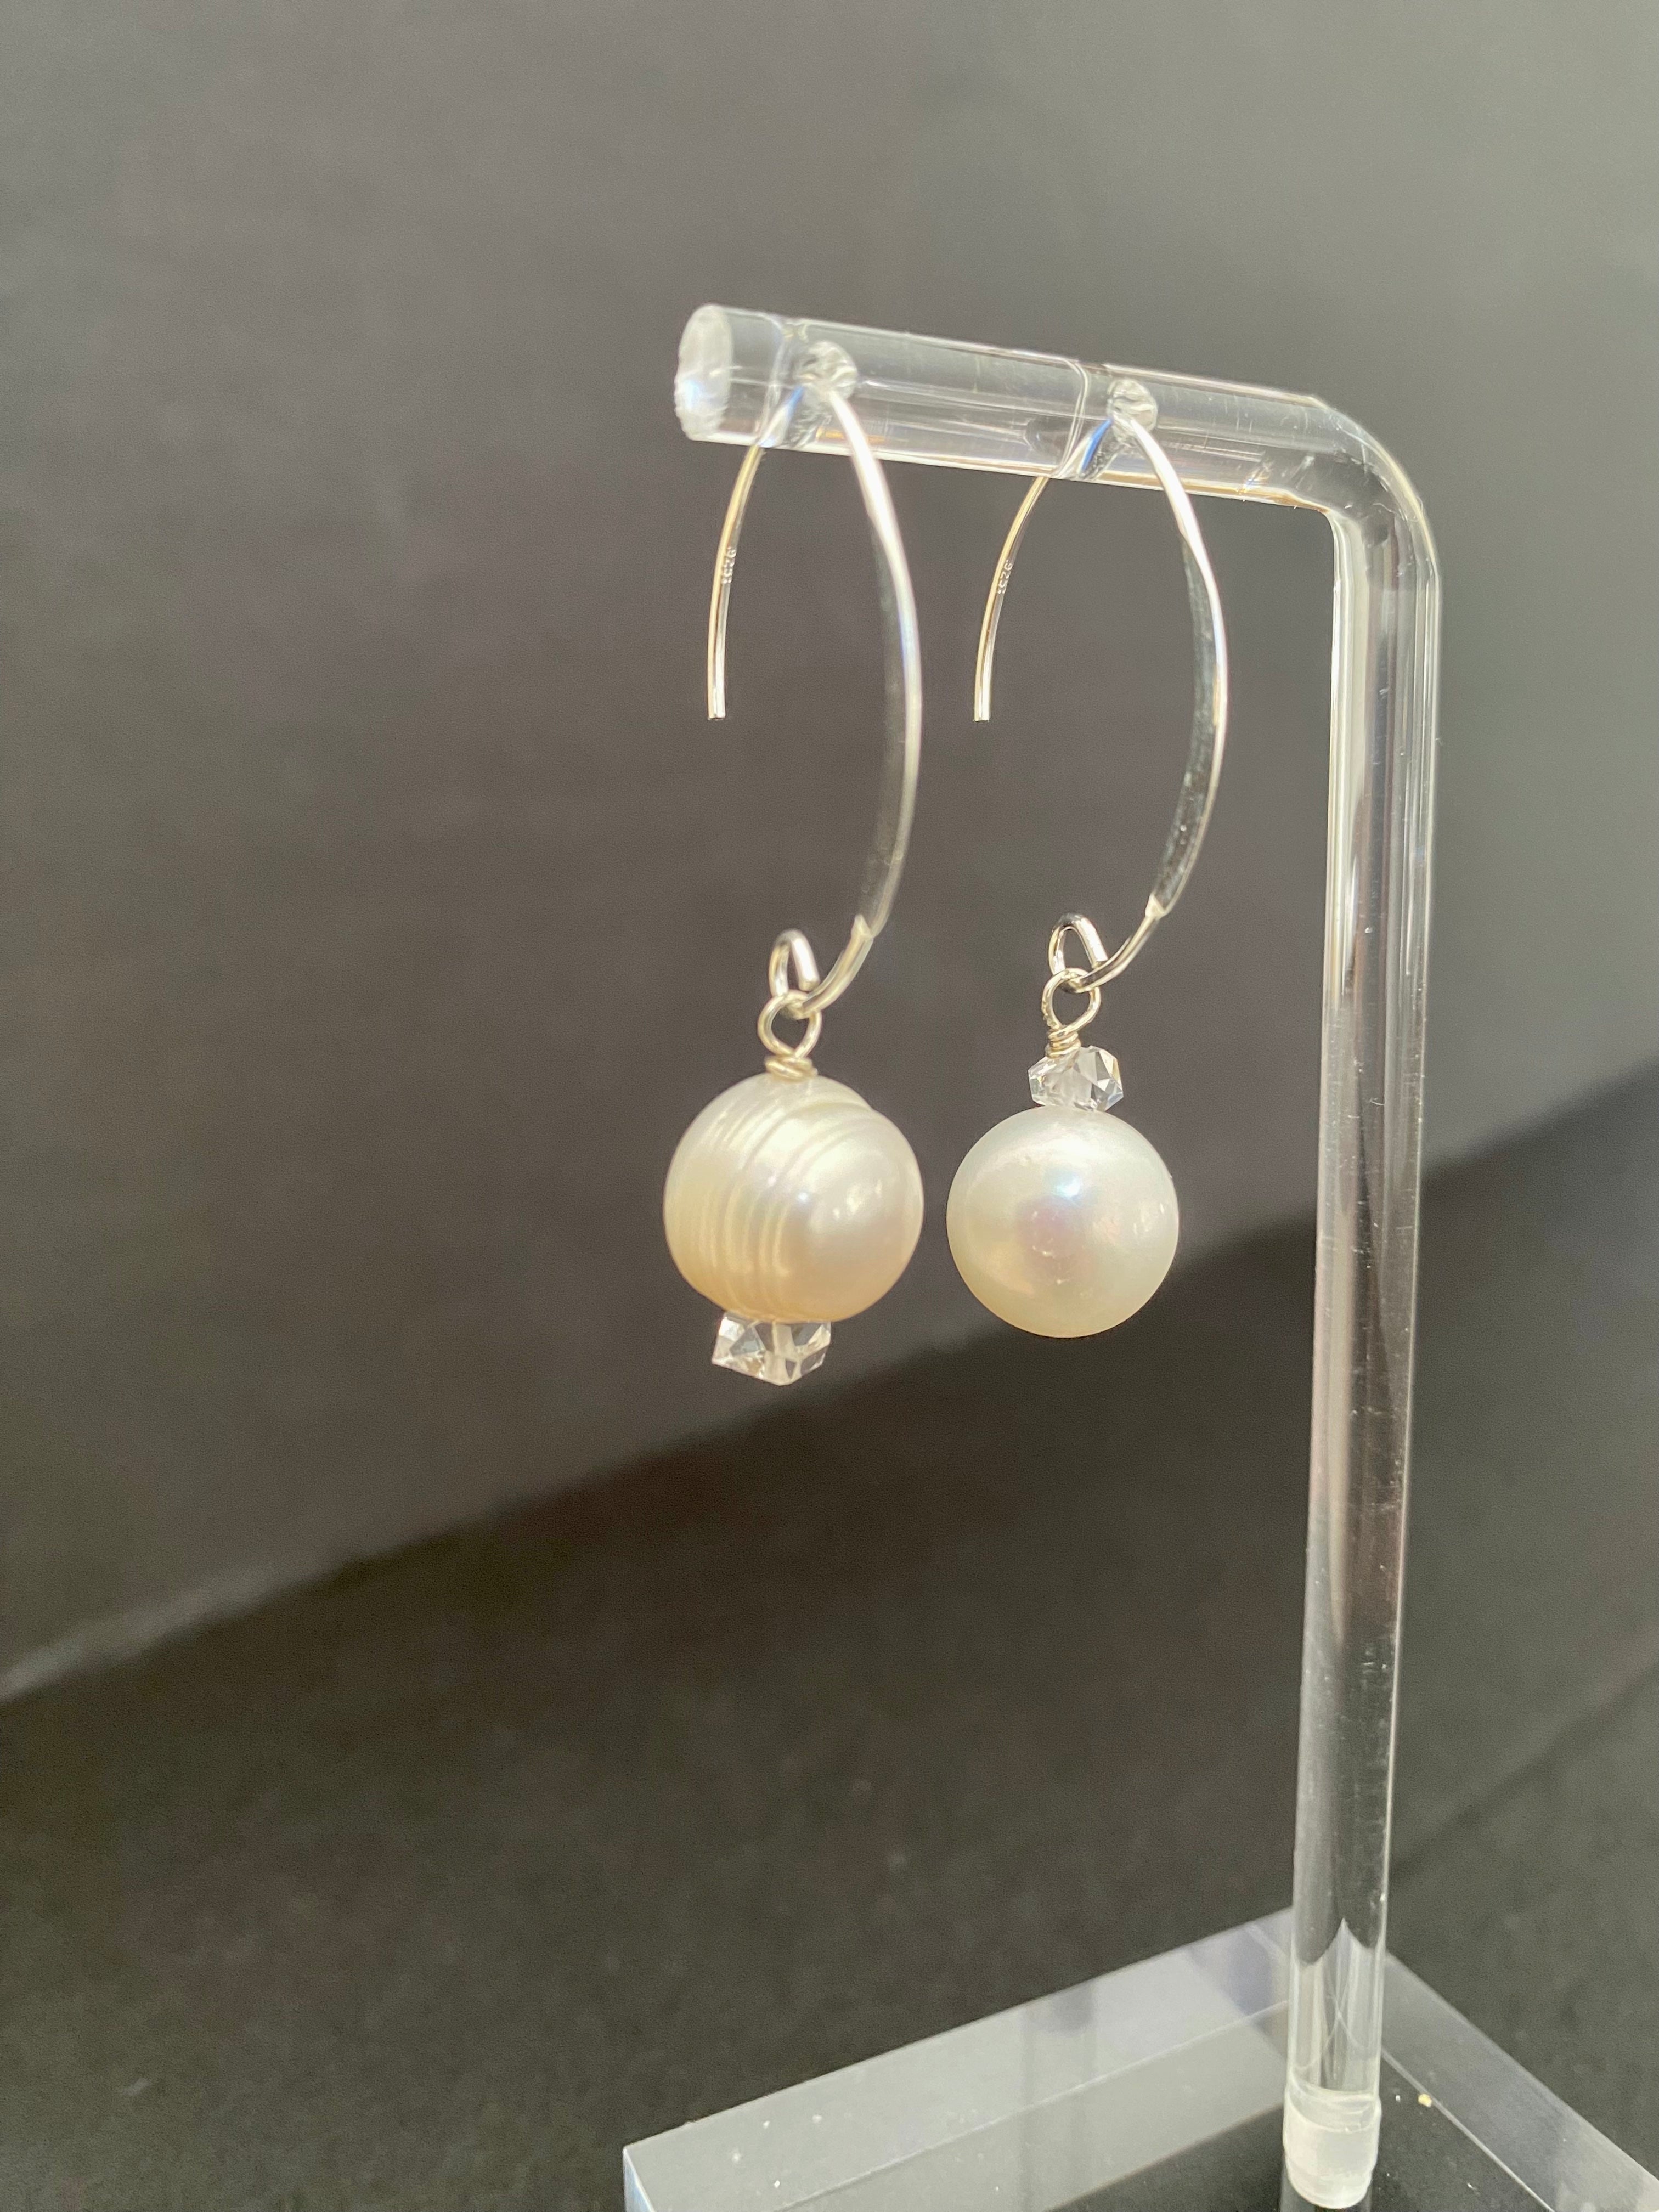 Pearl & Herkimer Diamond Sterling Silver Wire Earrings